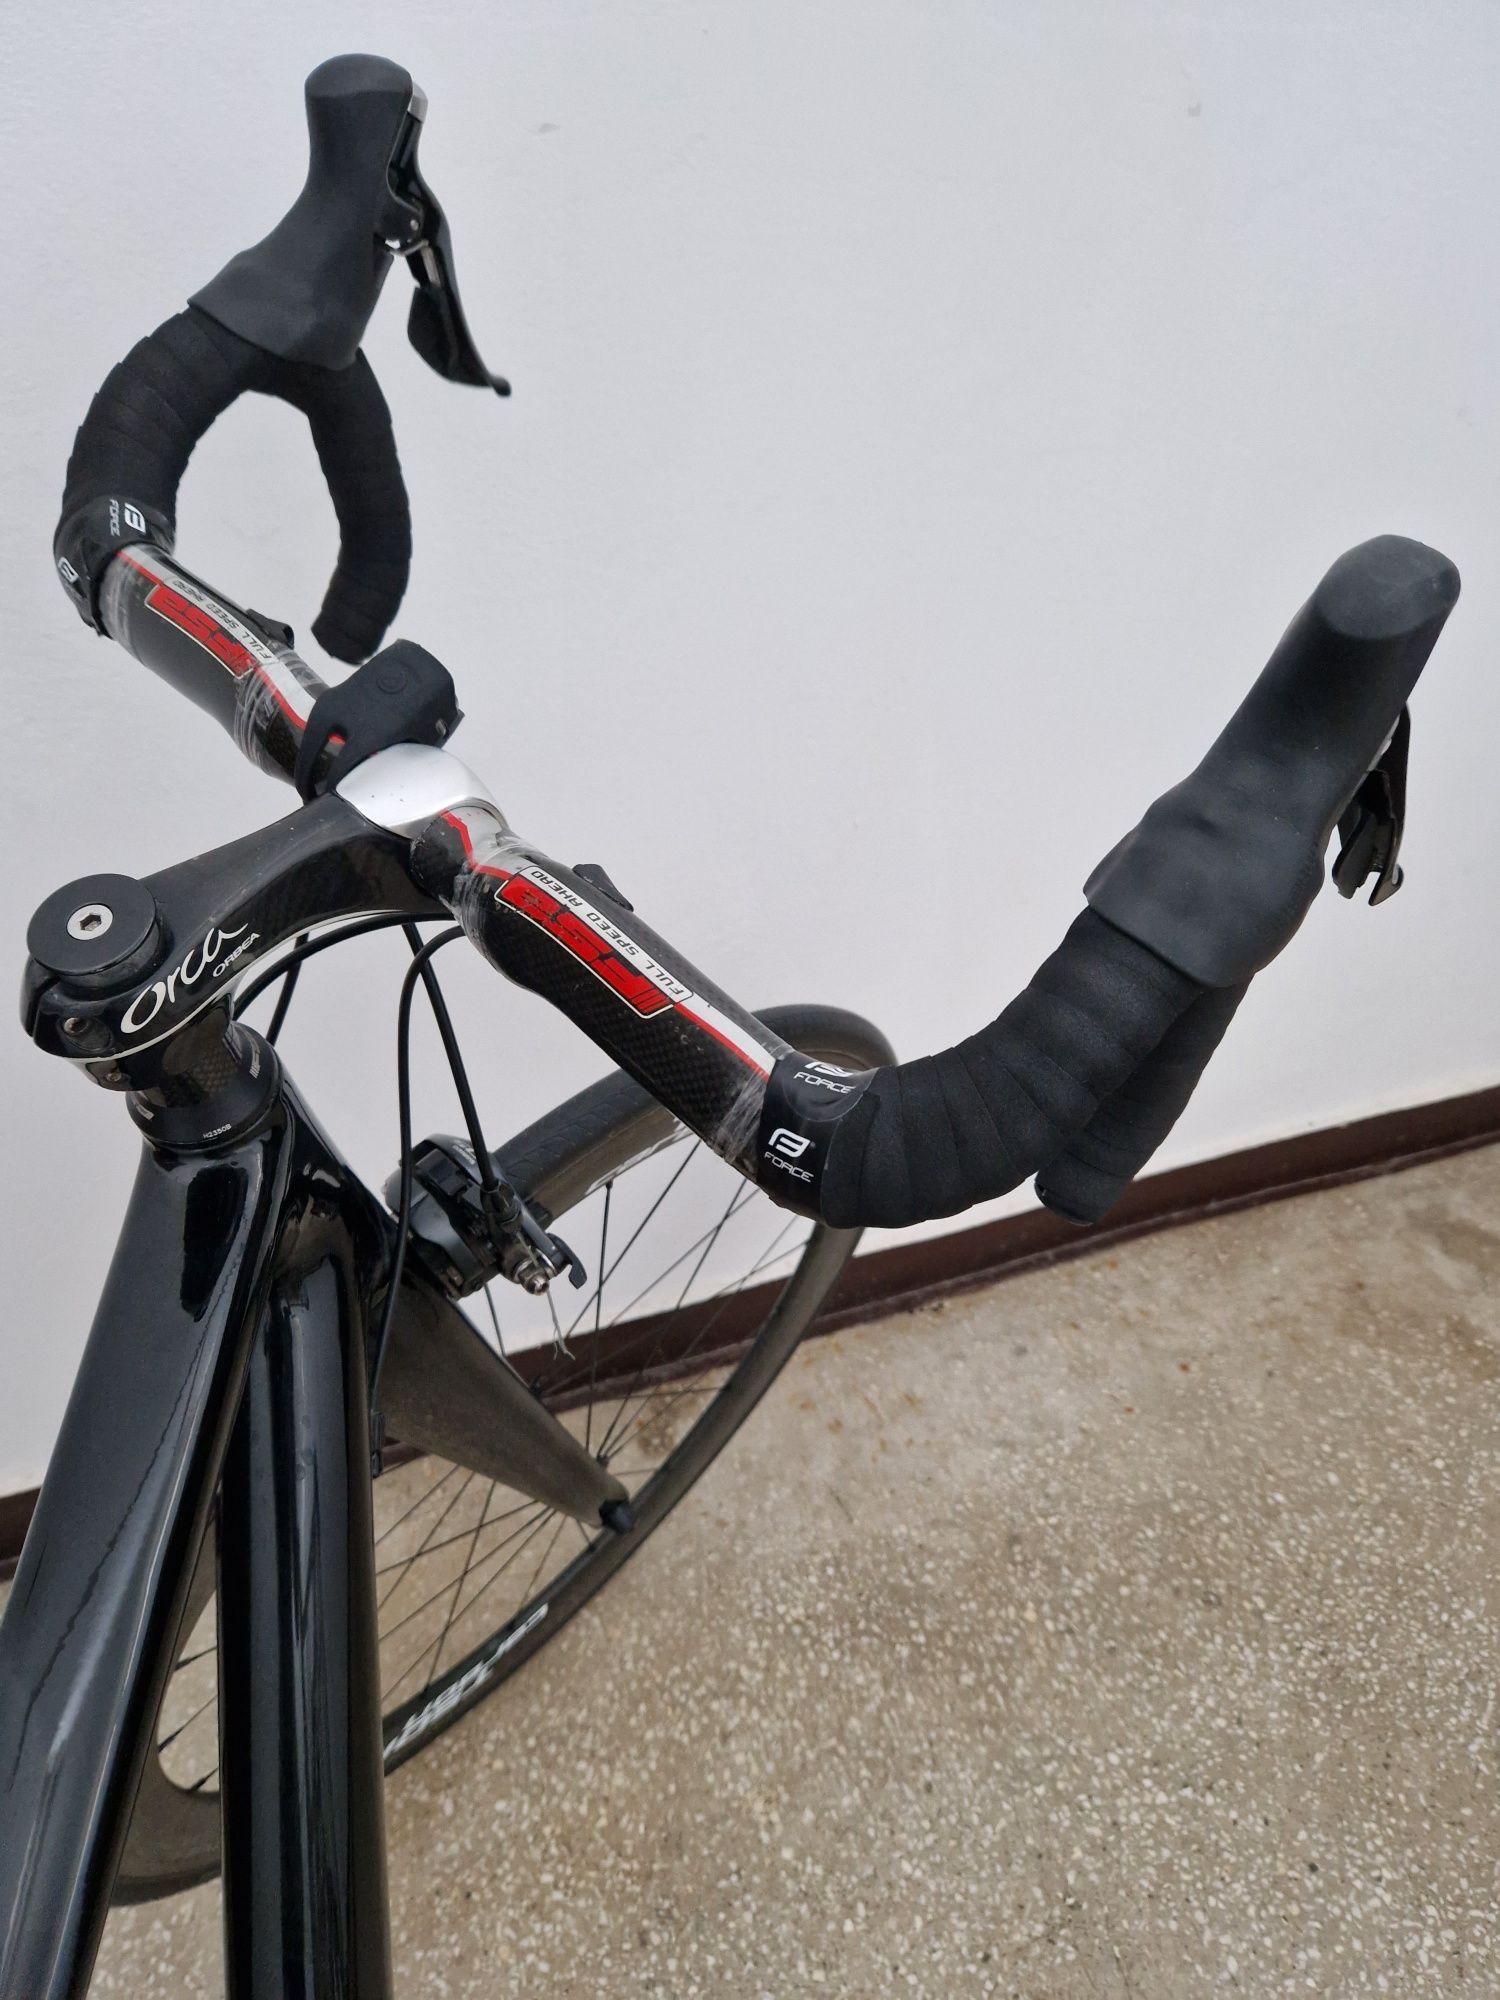 Bicicletă cursieră full carbon Fuji Altamira mărimea 54